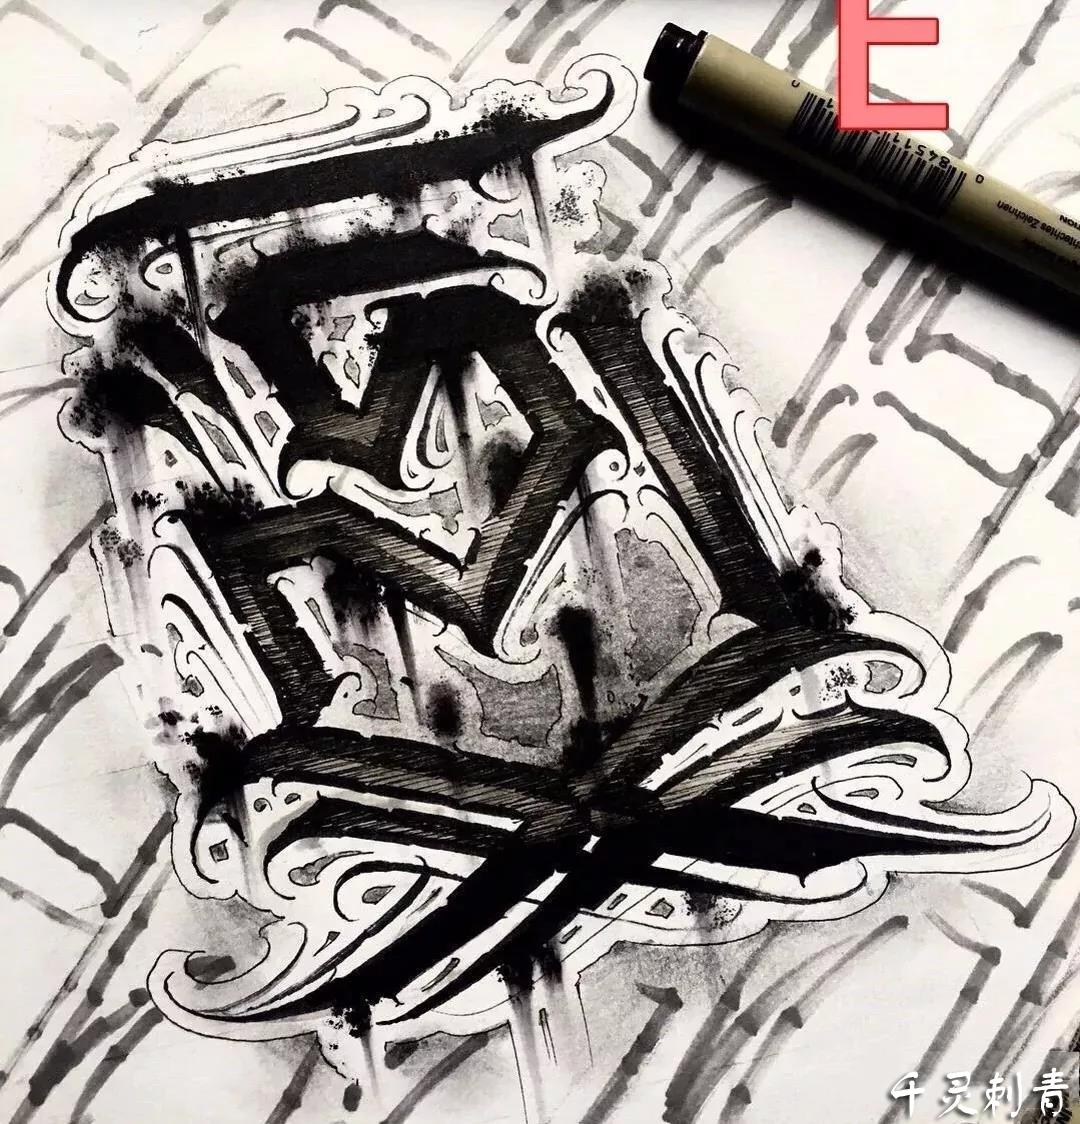 花体字E纹身手稿图案